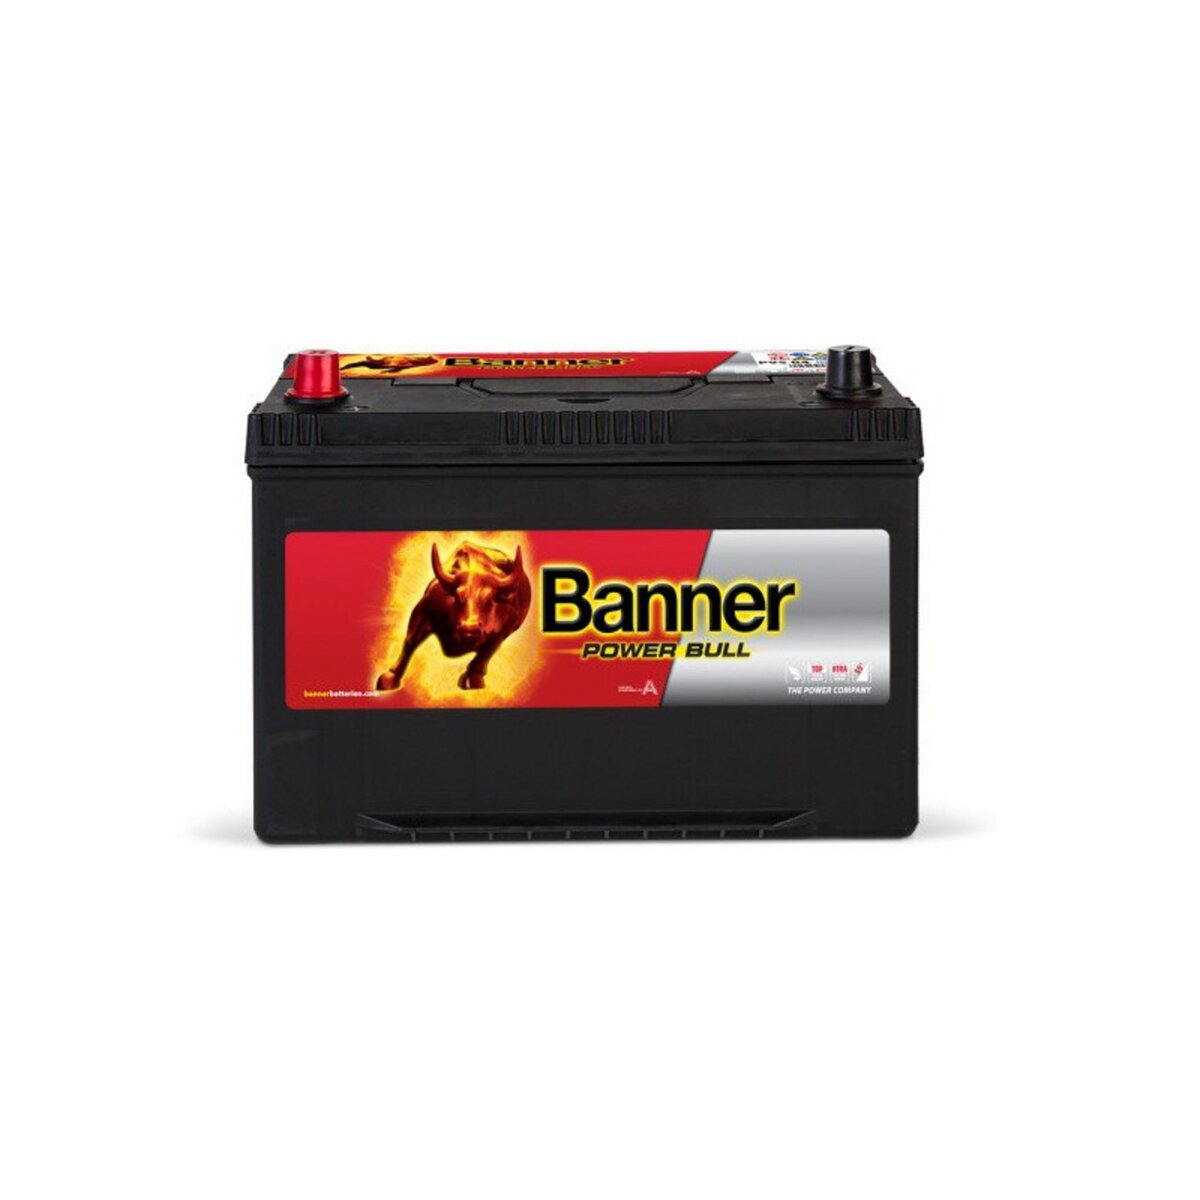 BANNER Banner Power Bull P9505 12v 95AH 740A